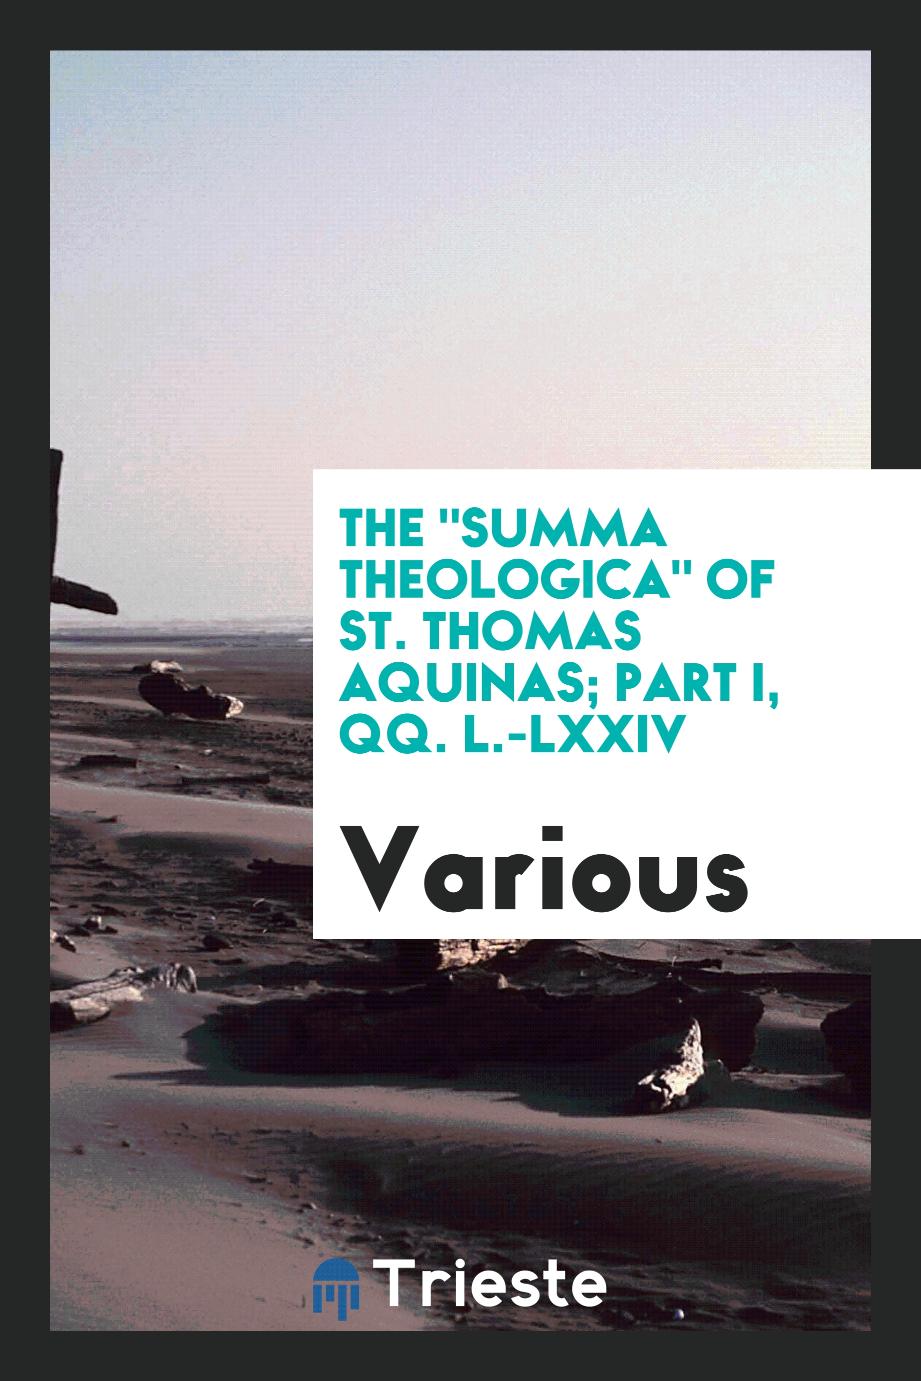 The "Summa theologica" of St. Thomas Aquinas; Part I, QQ. L.-LXXIV